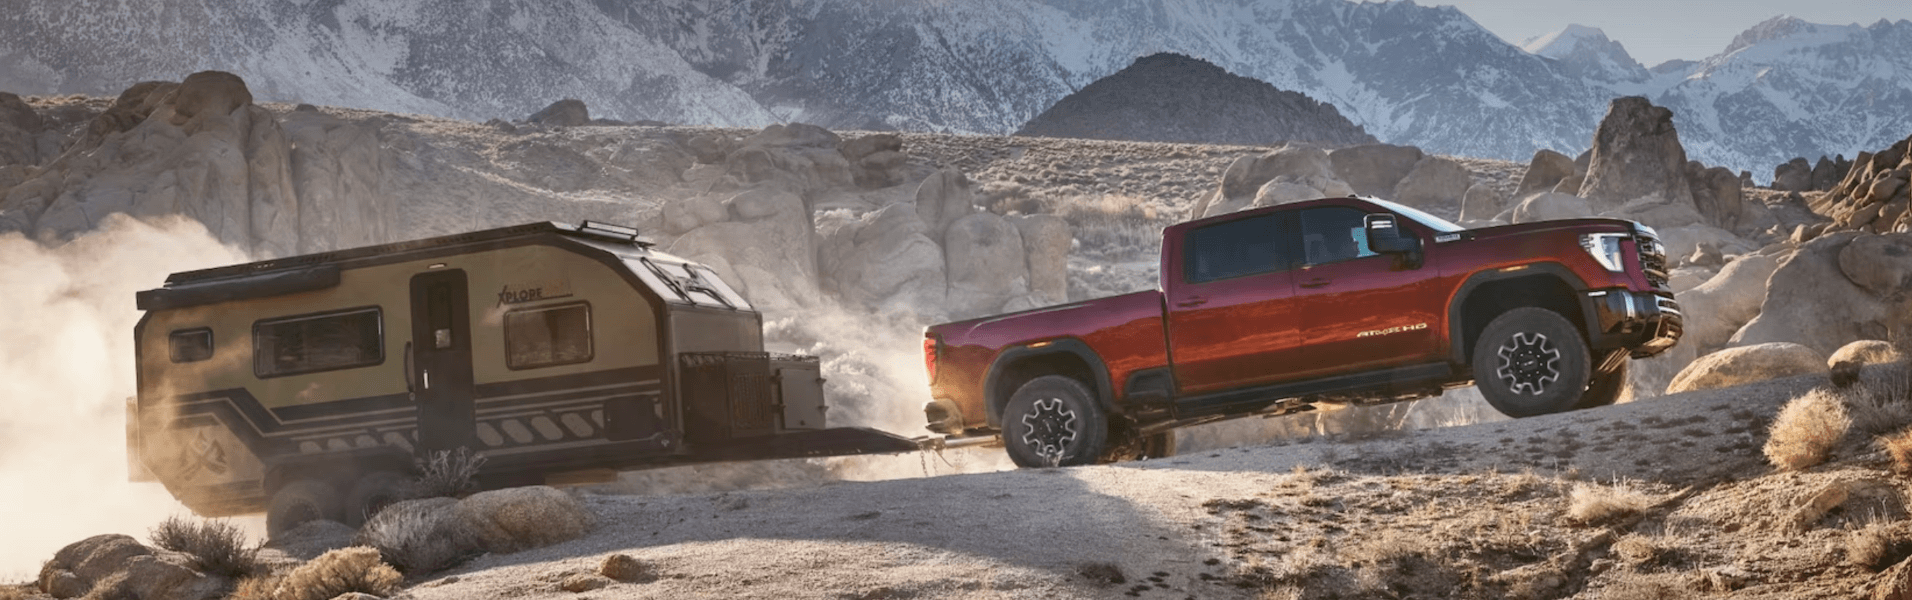 Red sierra 3500hd hauling trailer in desert